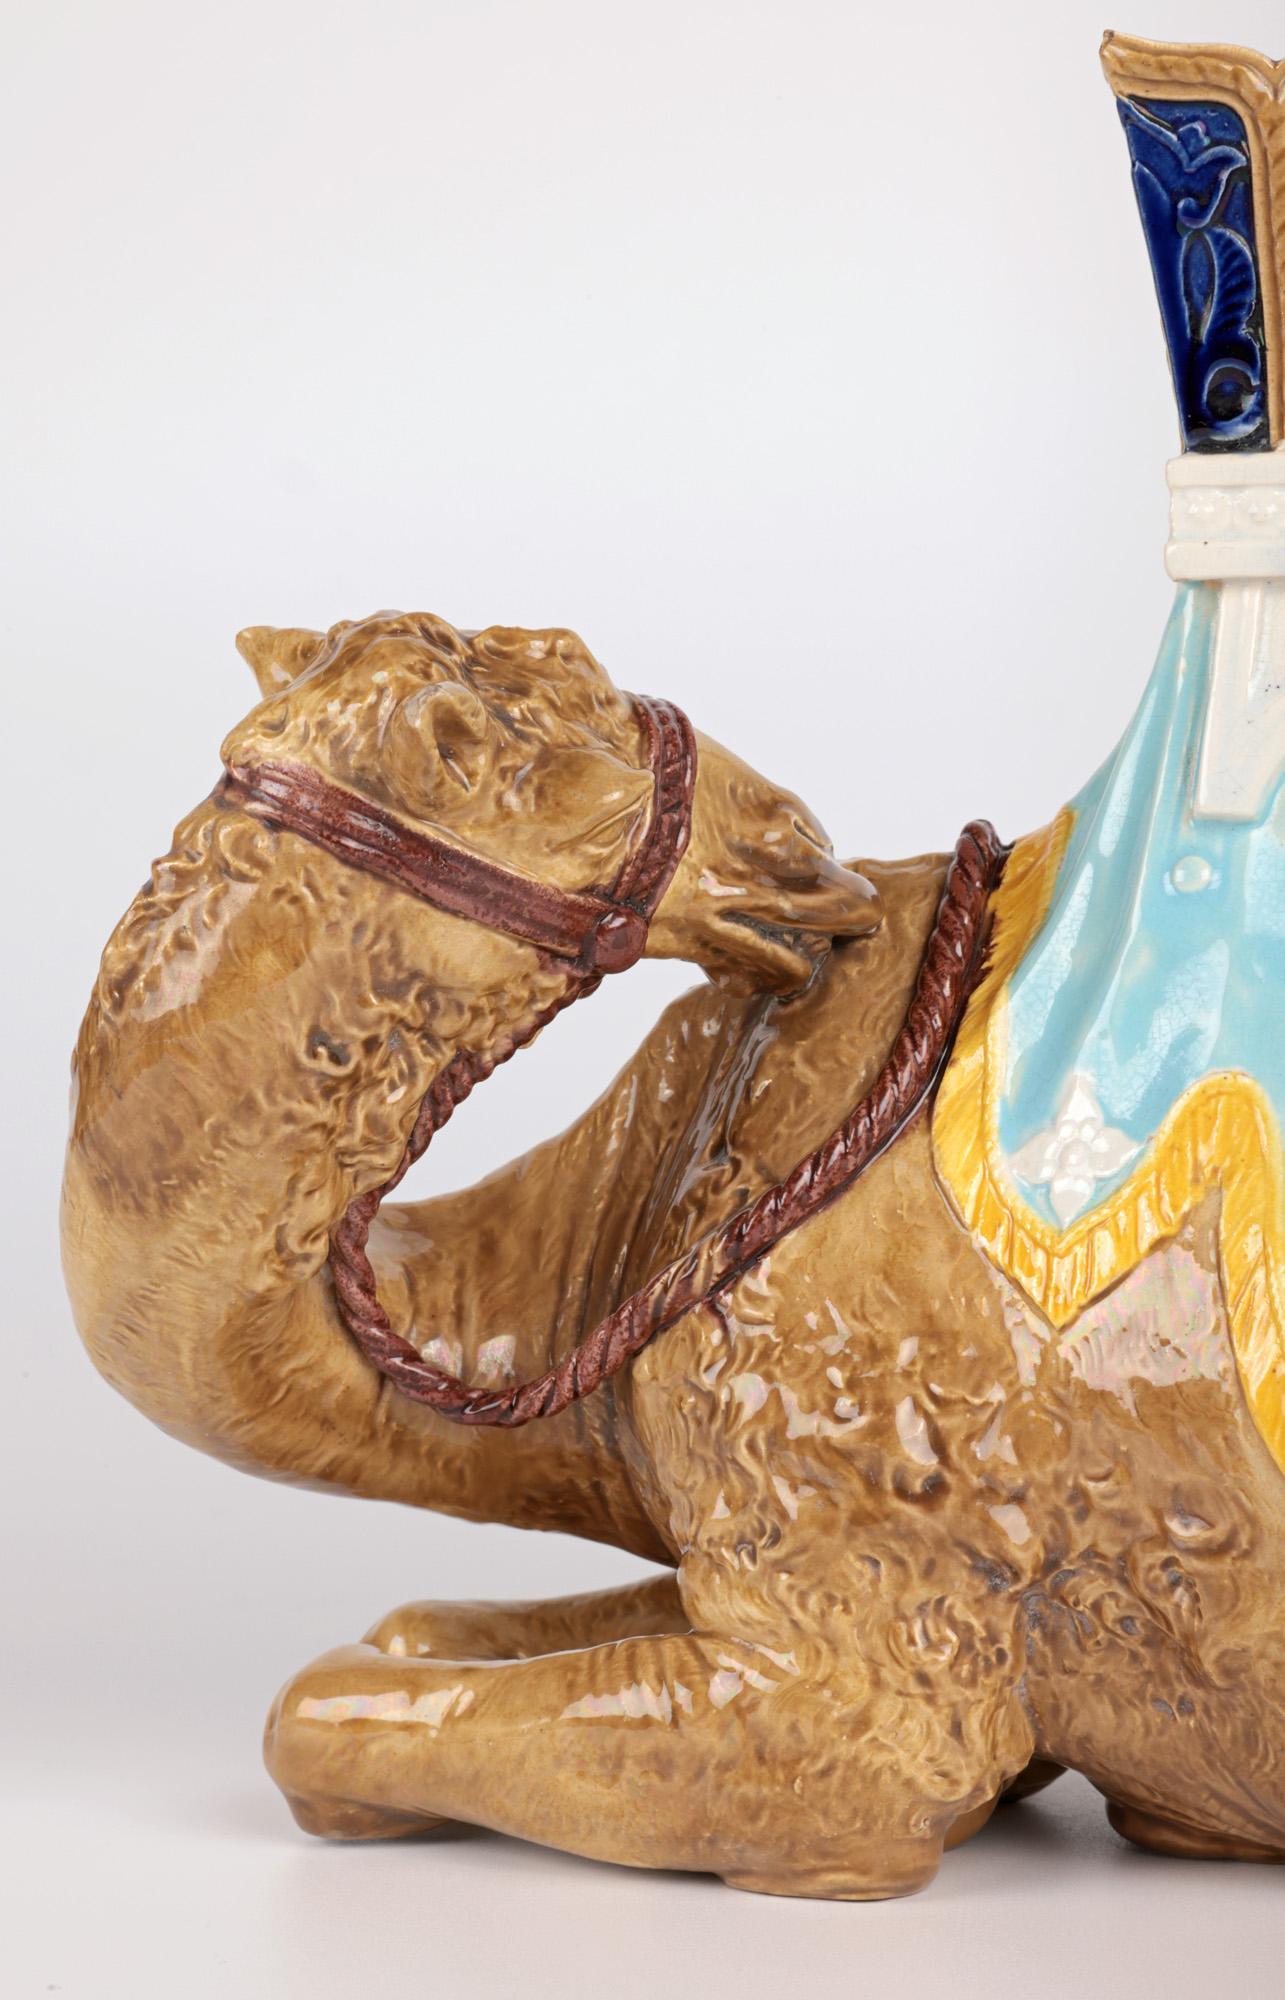 Eine sehr seltene und ungewöhnliche antike Royal Worcester Majolika-Keramik-Figur eines Kamels und einer Howdah vom berühmten Töpfer James Hadley (britisch, 1837-1903), datiert 22. Juni 1870. 

James Hadley war ein englischer Töpfer und Künstler,